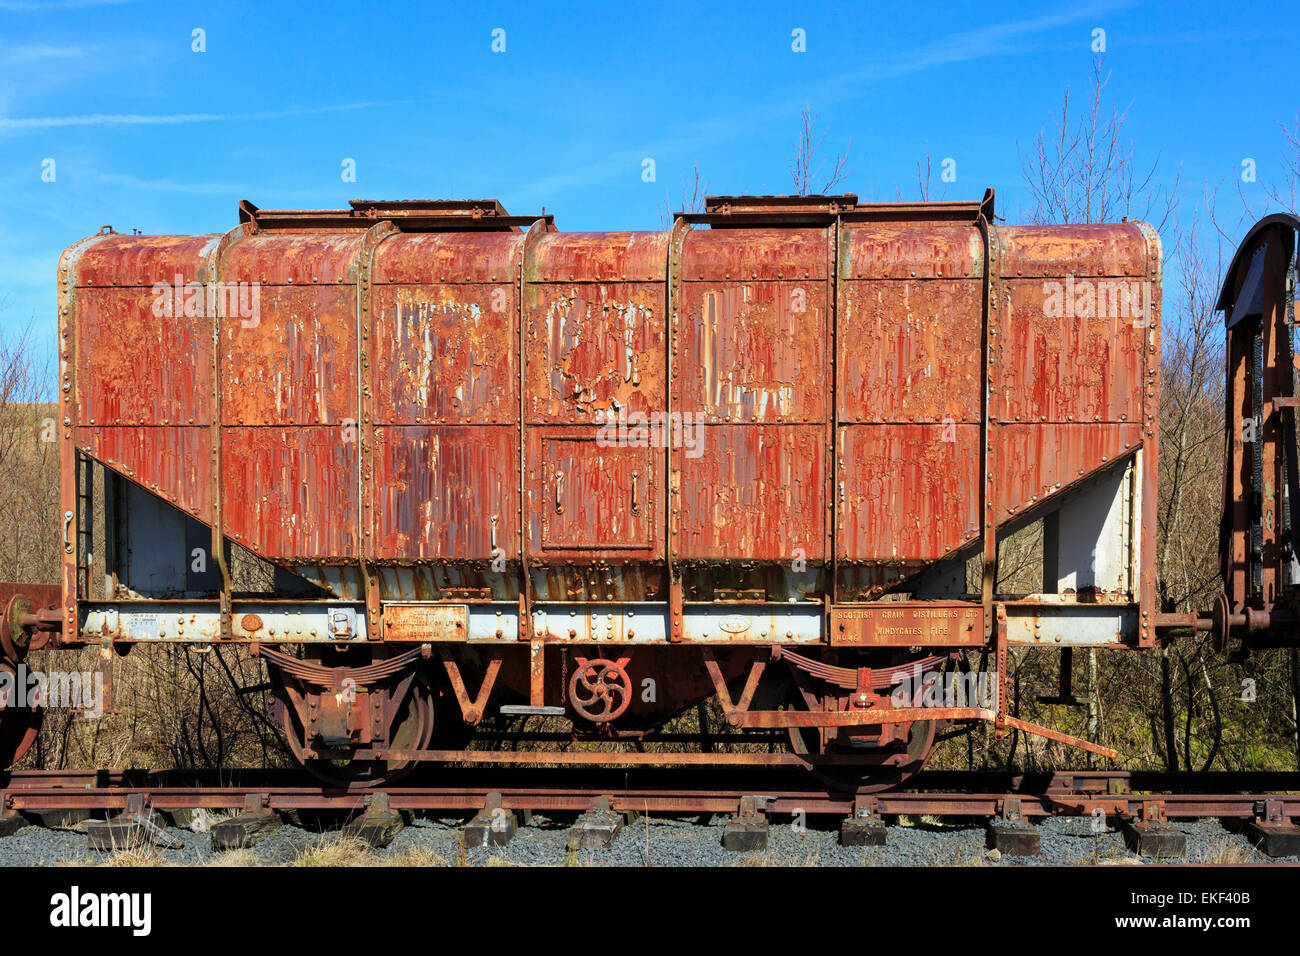 Old and rusting, abandoned railway haulage carriage, Ayrshire, Scotland, UK Stock Photo